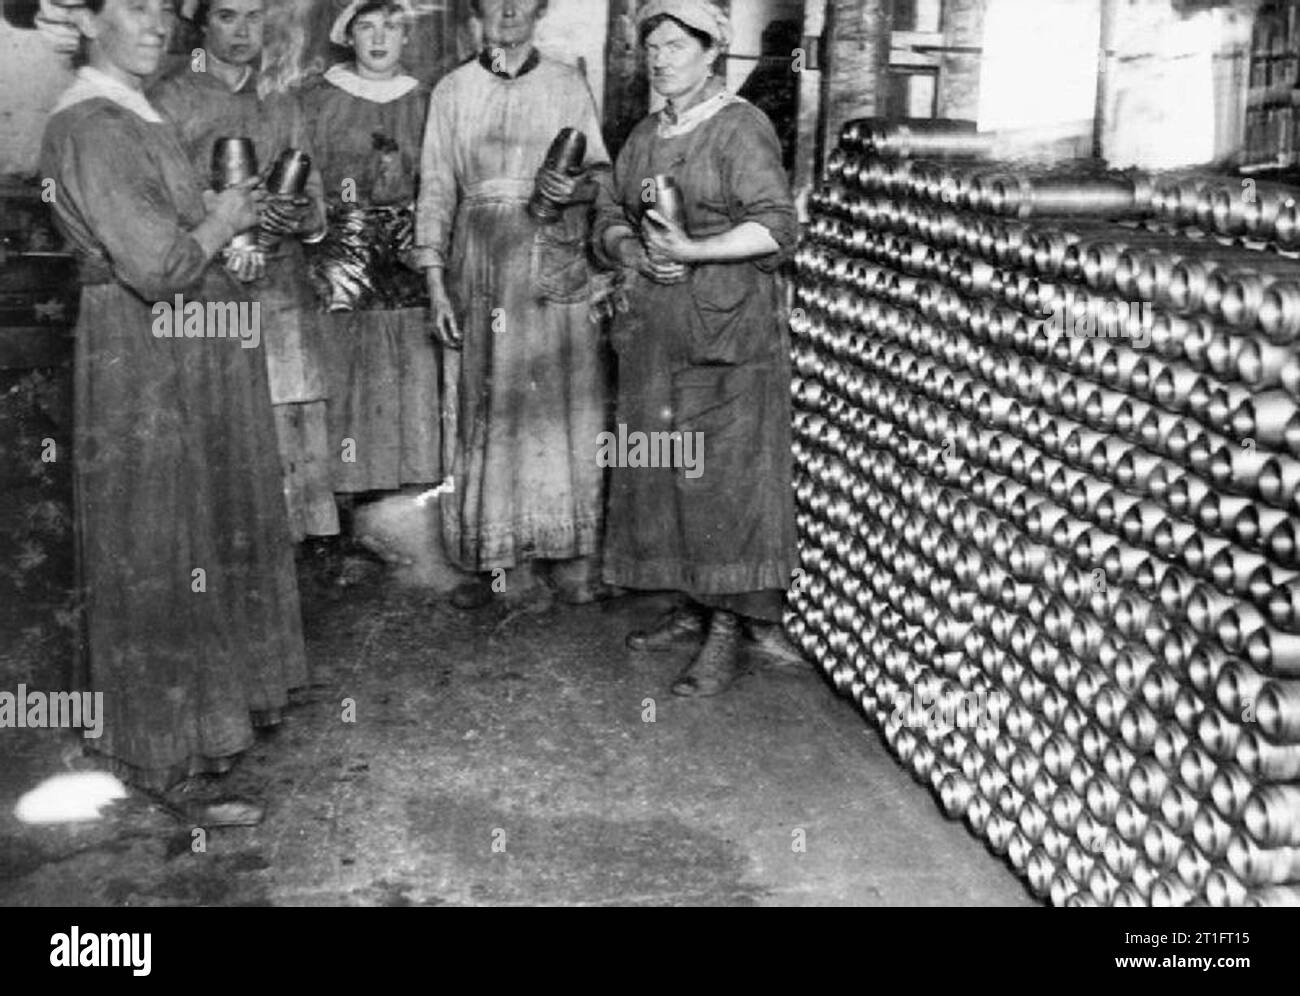 L'industrie au cours de la Première Guerre mondiale, les femmes détiennent elles forment les coquilles dans une usine de munitions britanniques pendant la Première Guerre mondiale. Banque D'Images